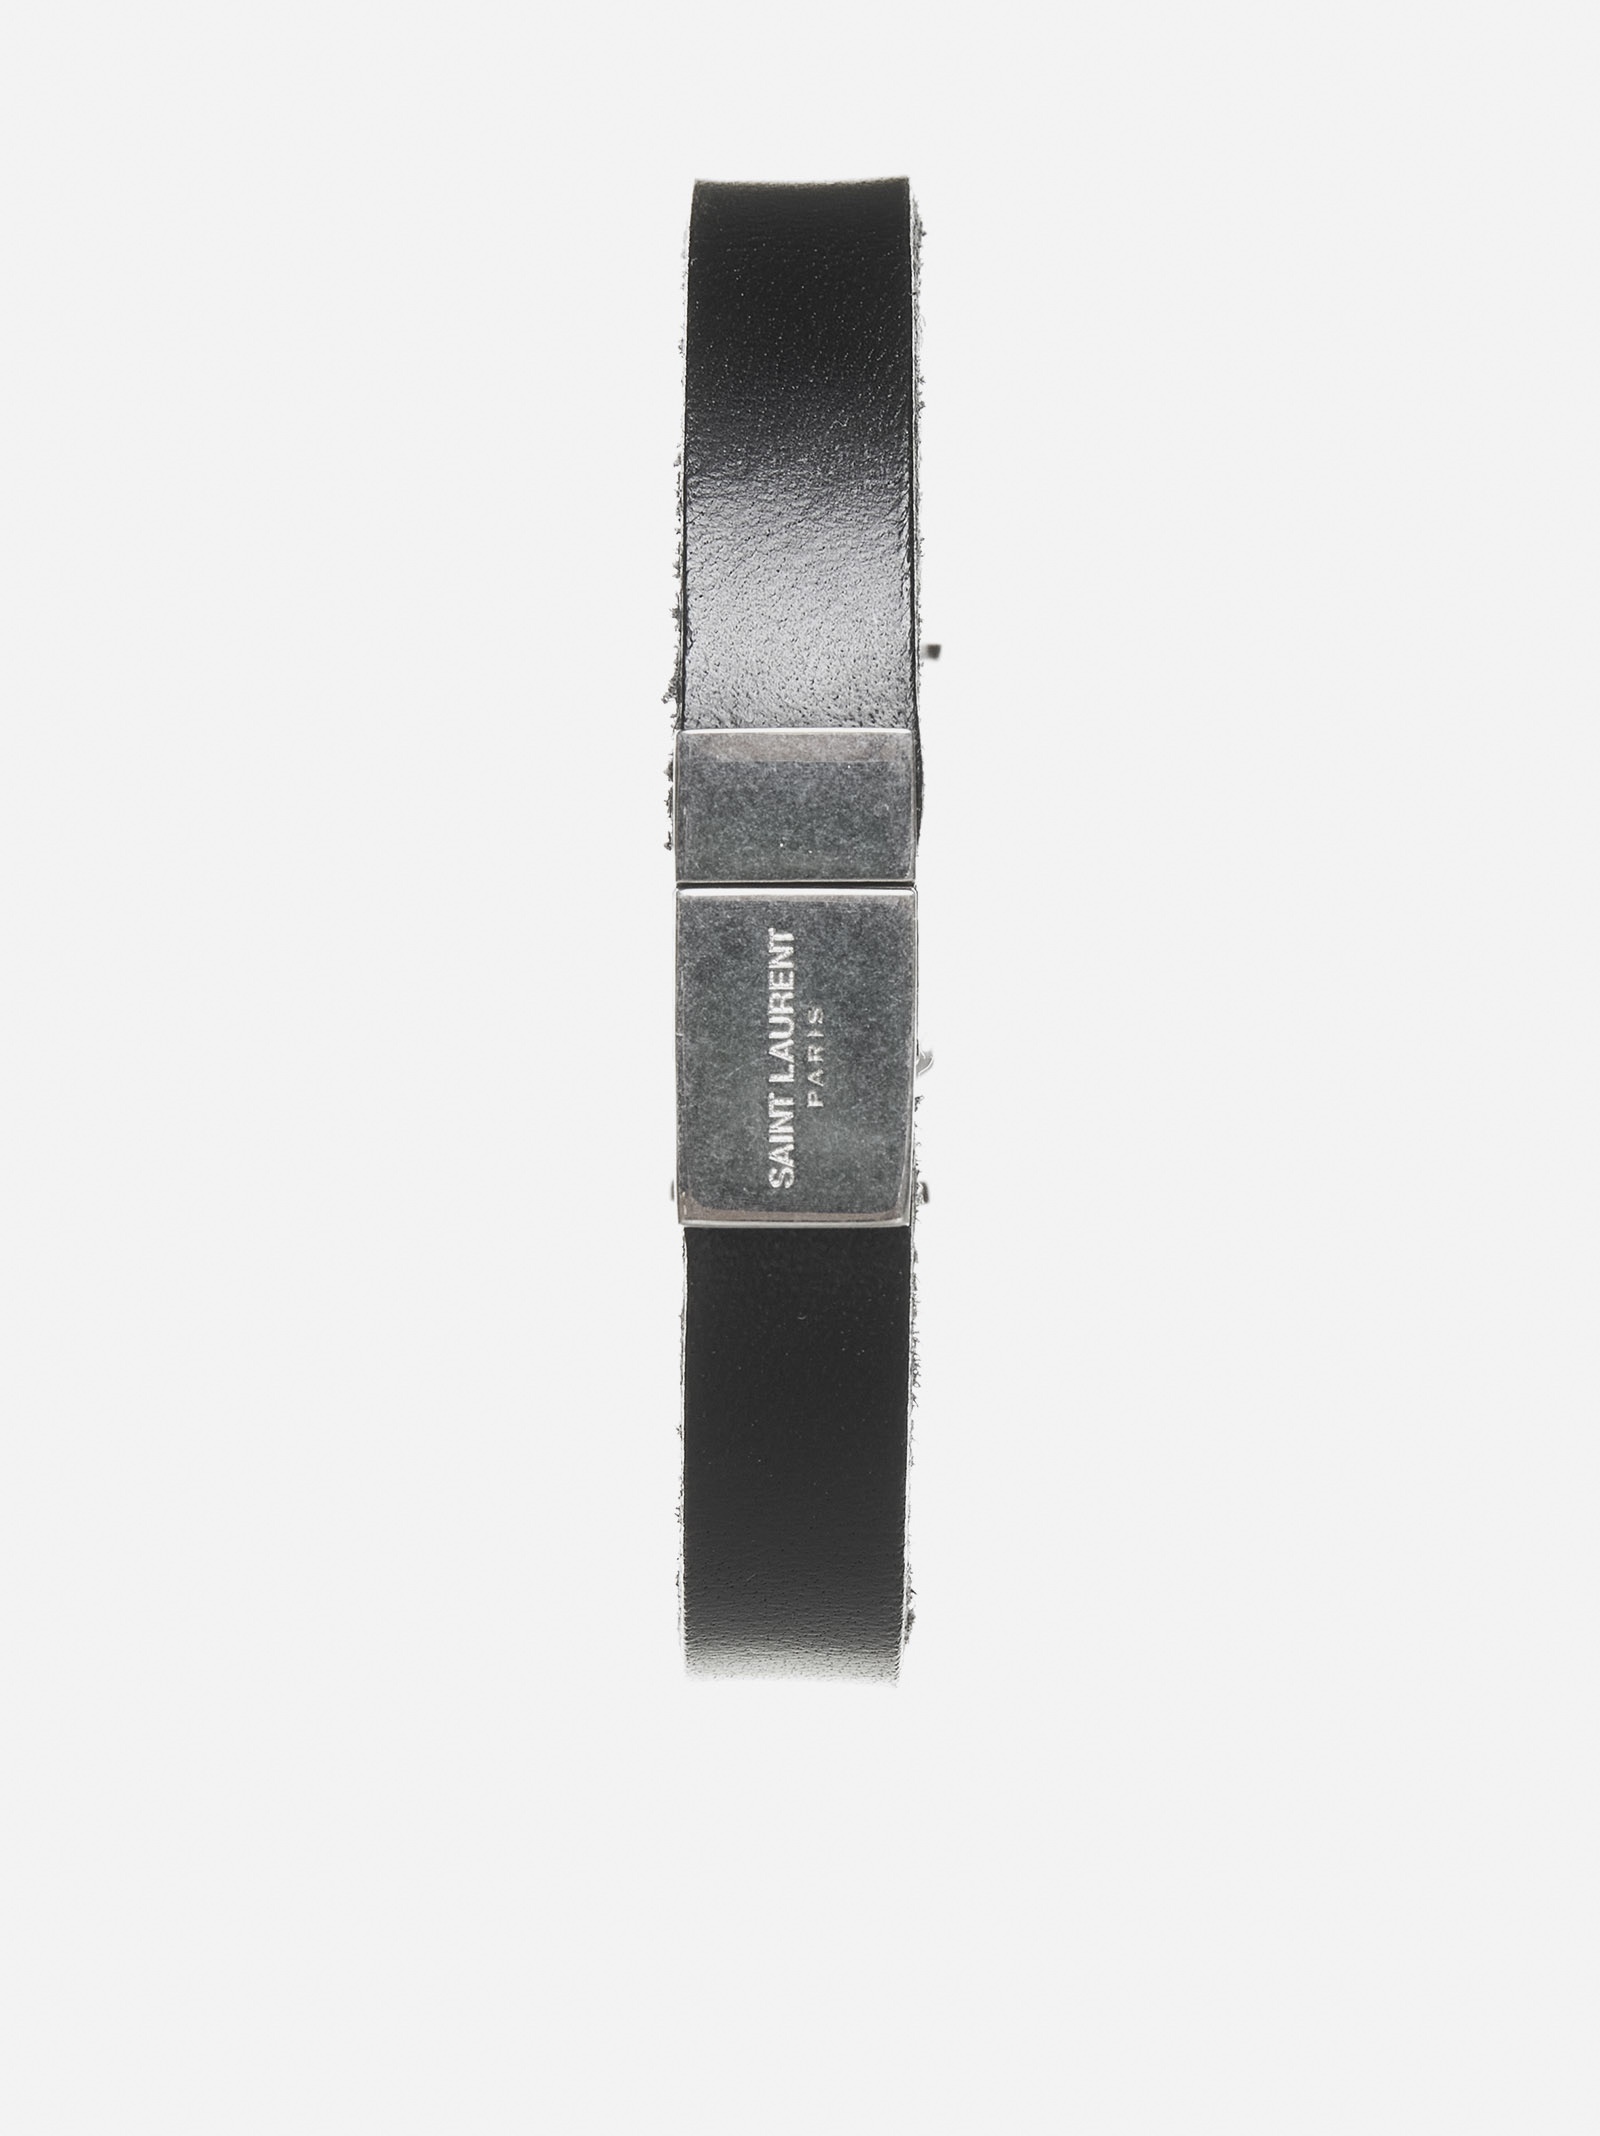 Opyum YSL vegan leather bracelet - 2